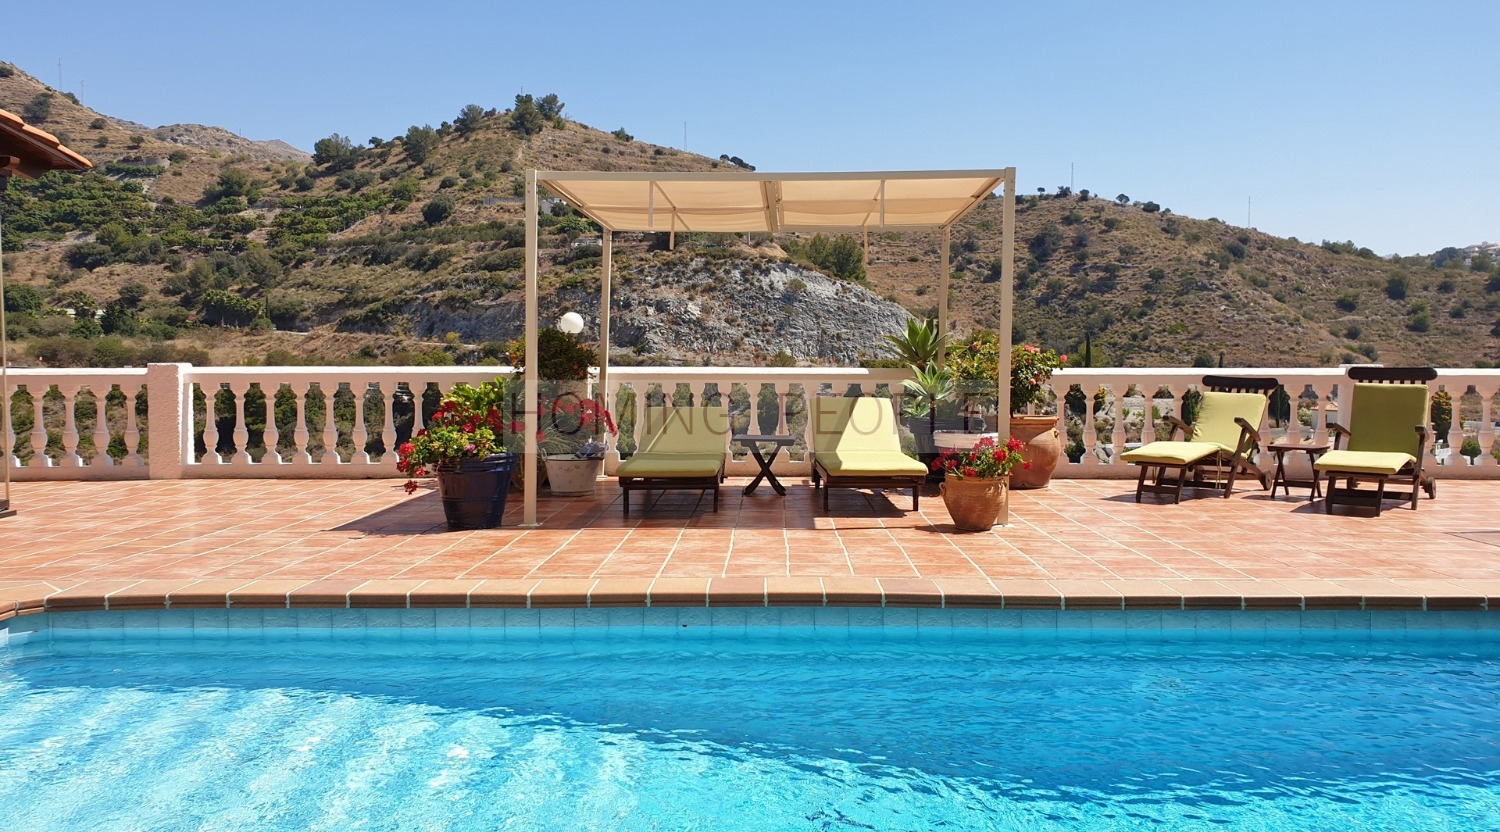 Villa con piscina y vistas al mar, situado en zona residencial muy apreciada